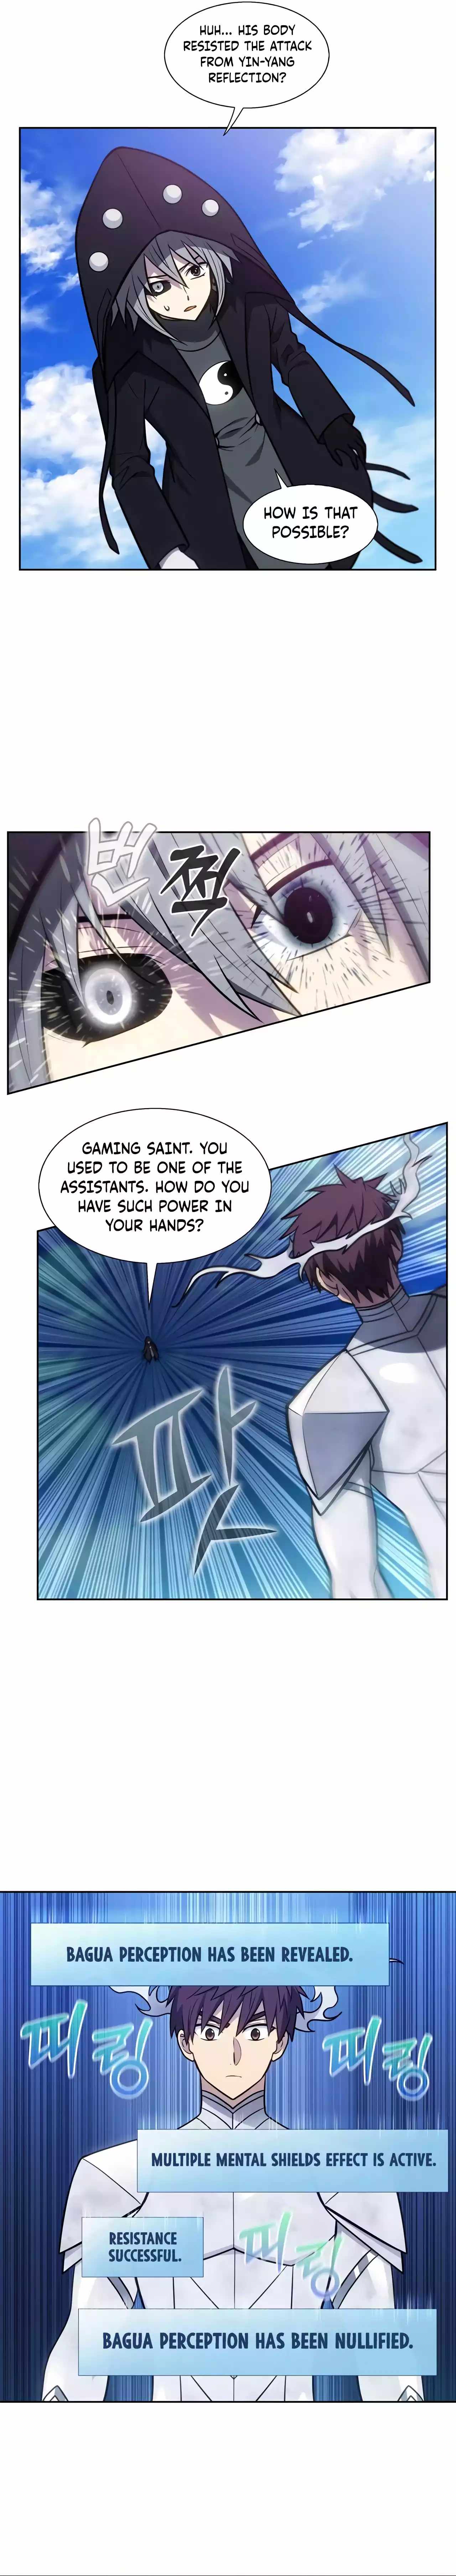 The Gamer, Chapter 434 - The Gamer Manga Online